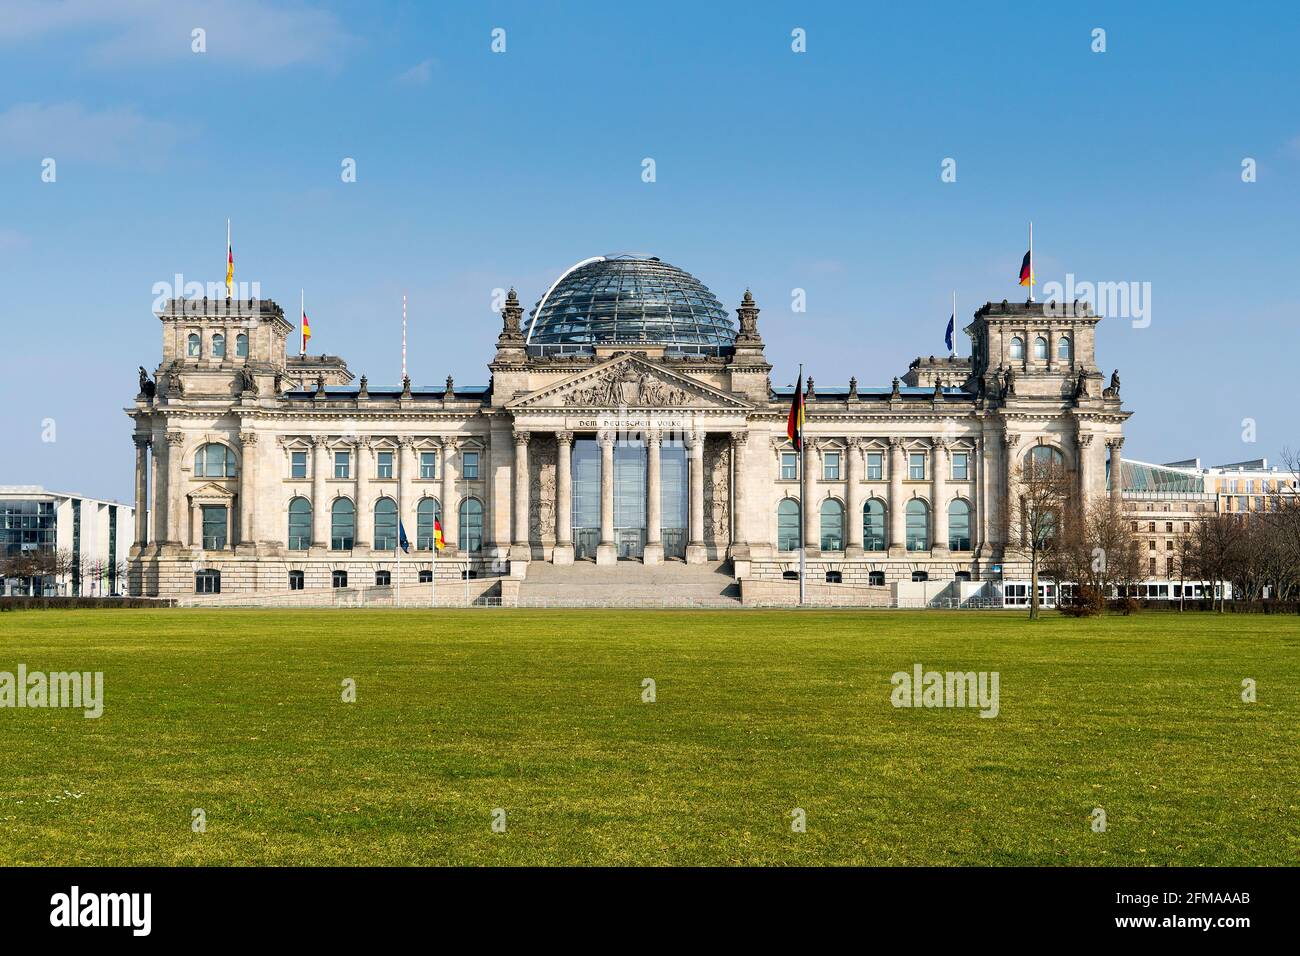 Berlin, bâtiment du Reichstag, siège du Bundestag allemand, combinaison de dôme de verre néo-renaissance et moderne (Norman Foster) Banque D'Images